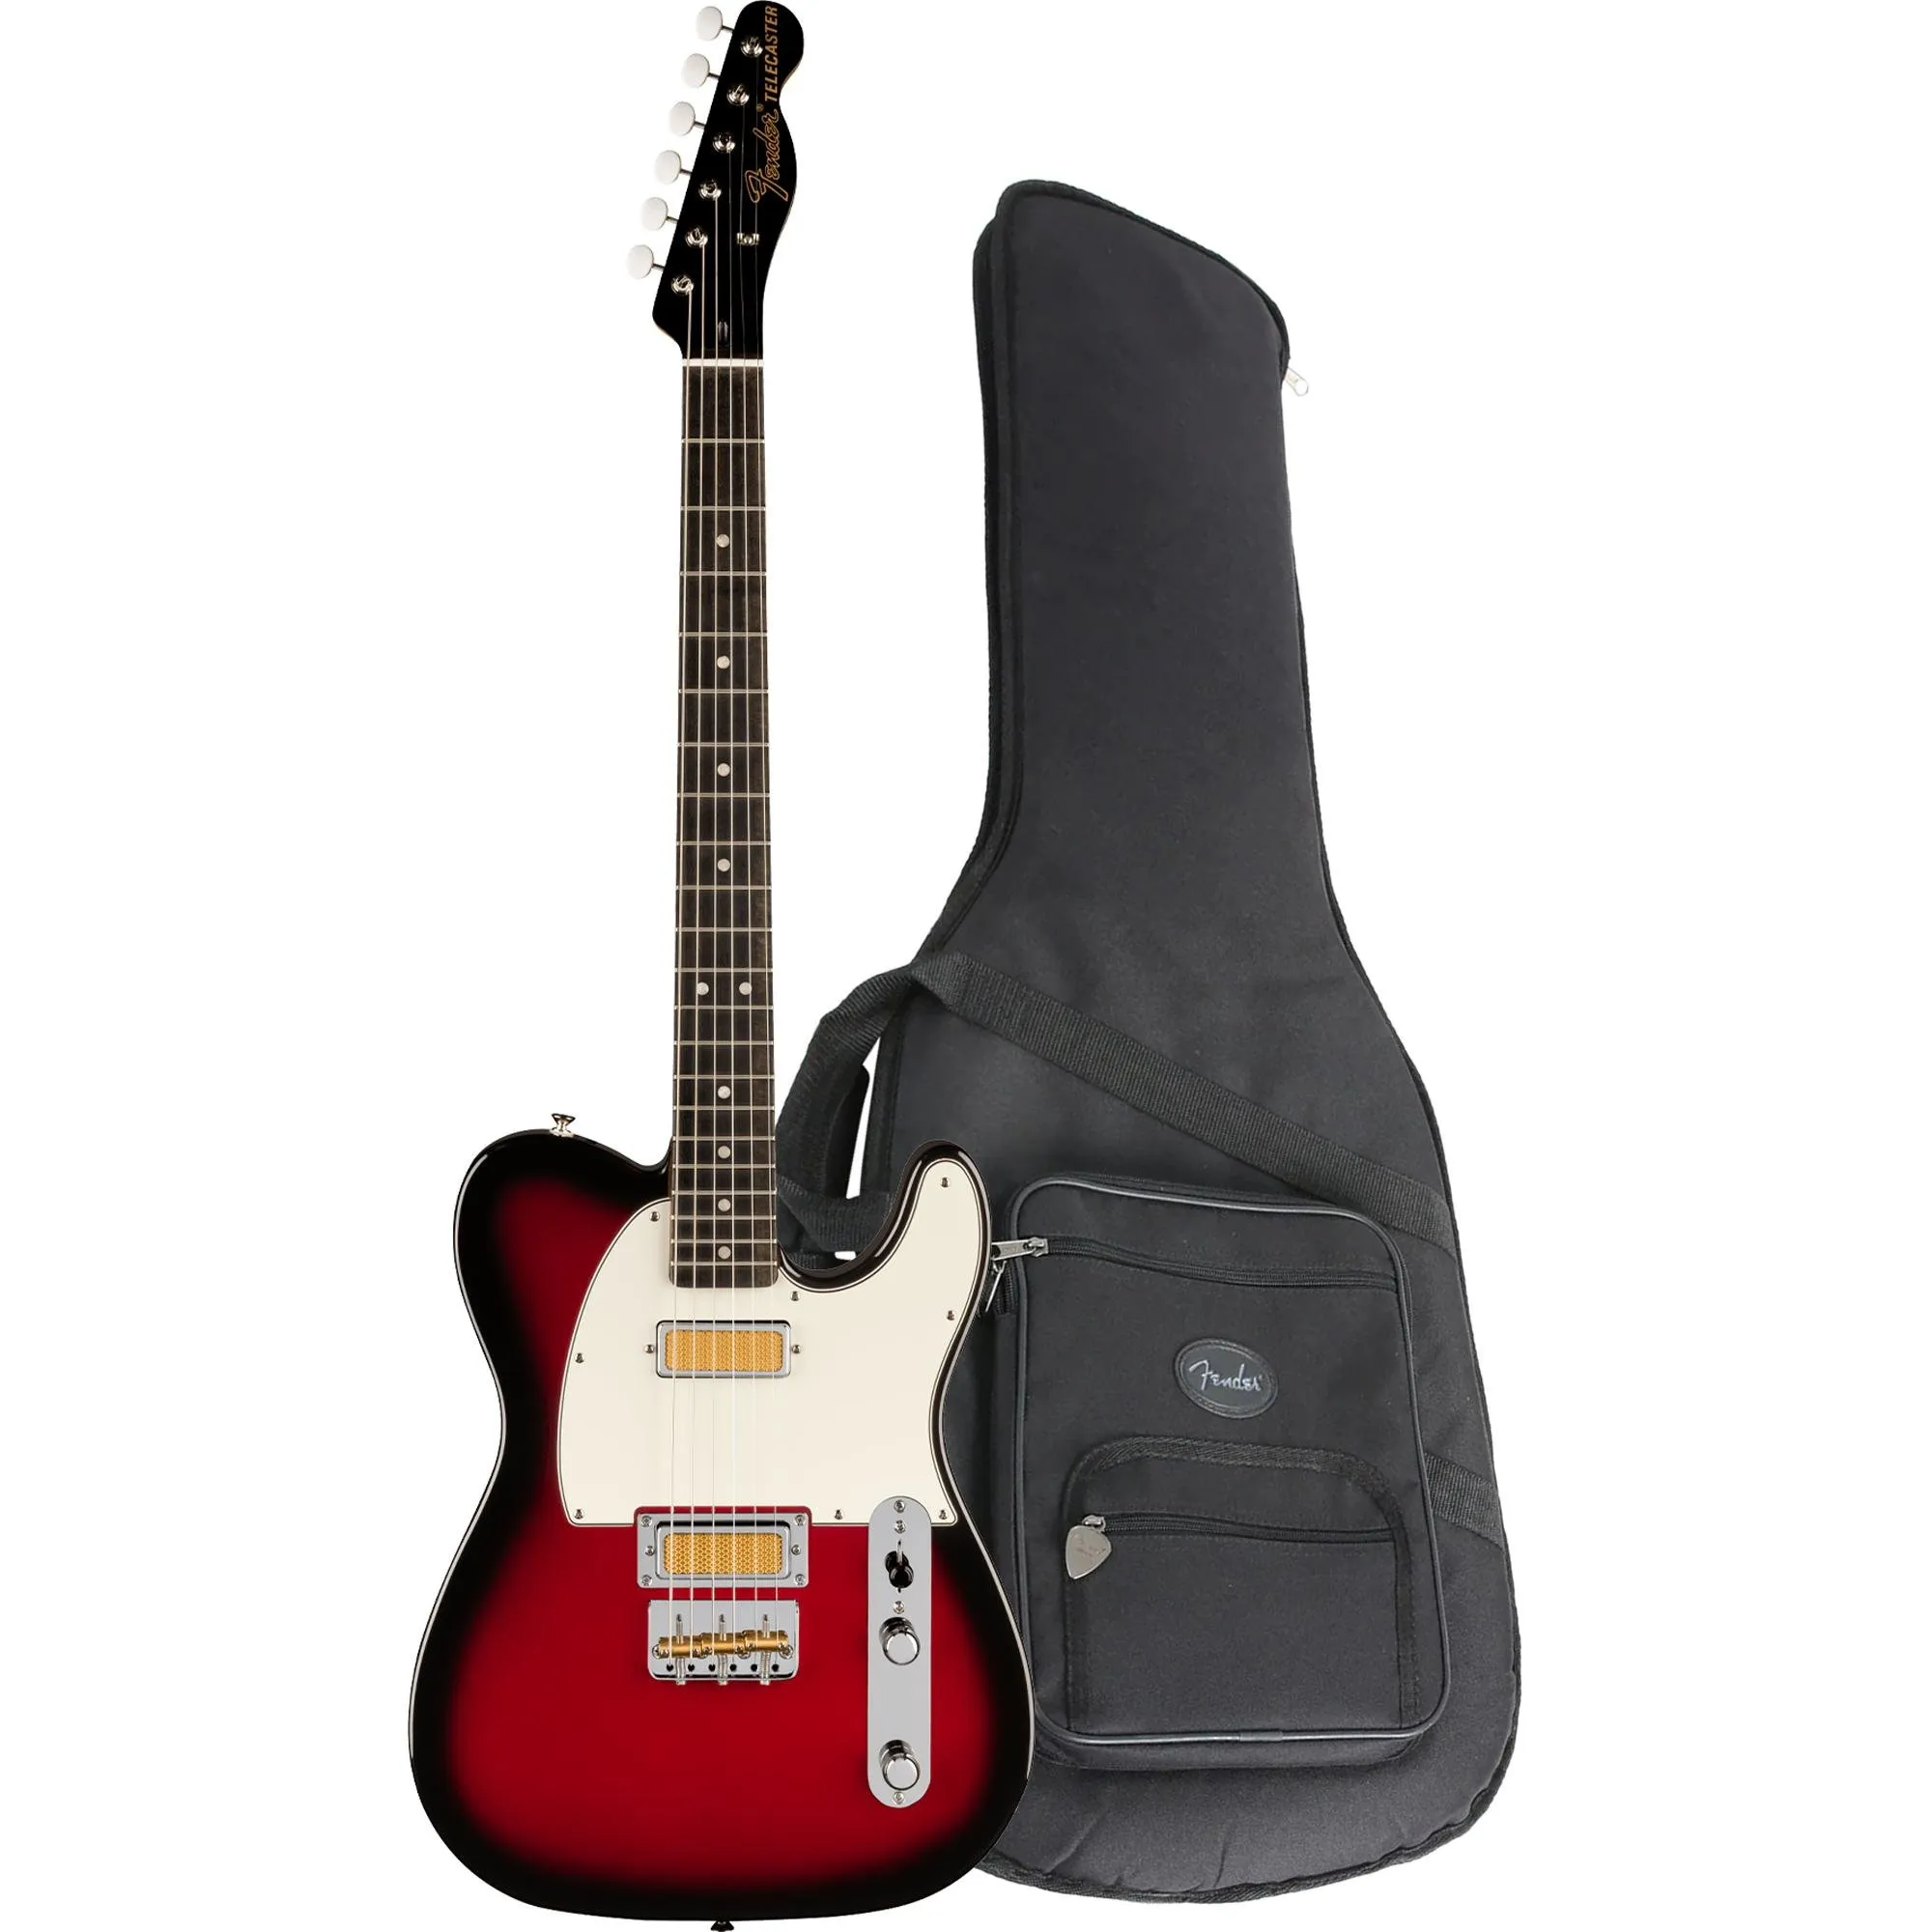 Guitarra Fender Telecaster Gold Foil Candy Apple Burst Com Bag por 10.052,00 à vista no boleto/pix ou parcele em até 12x sem juros. Compre na loja Mundomax!